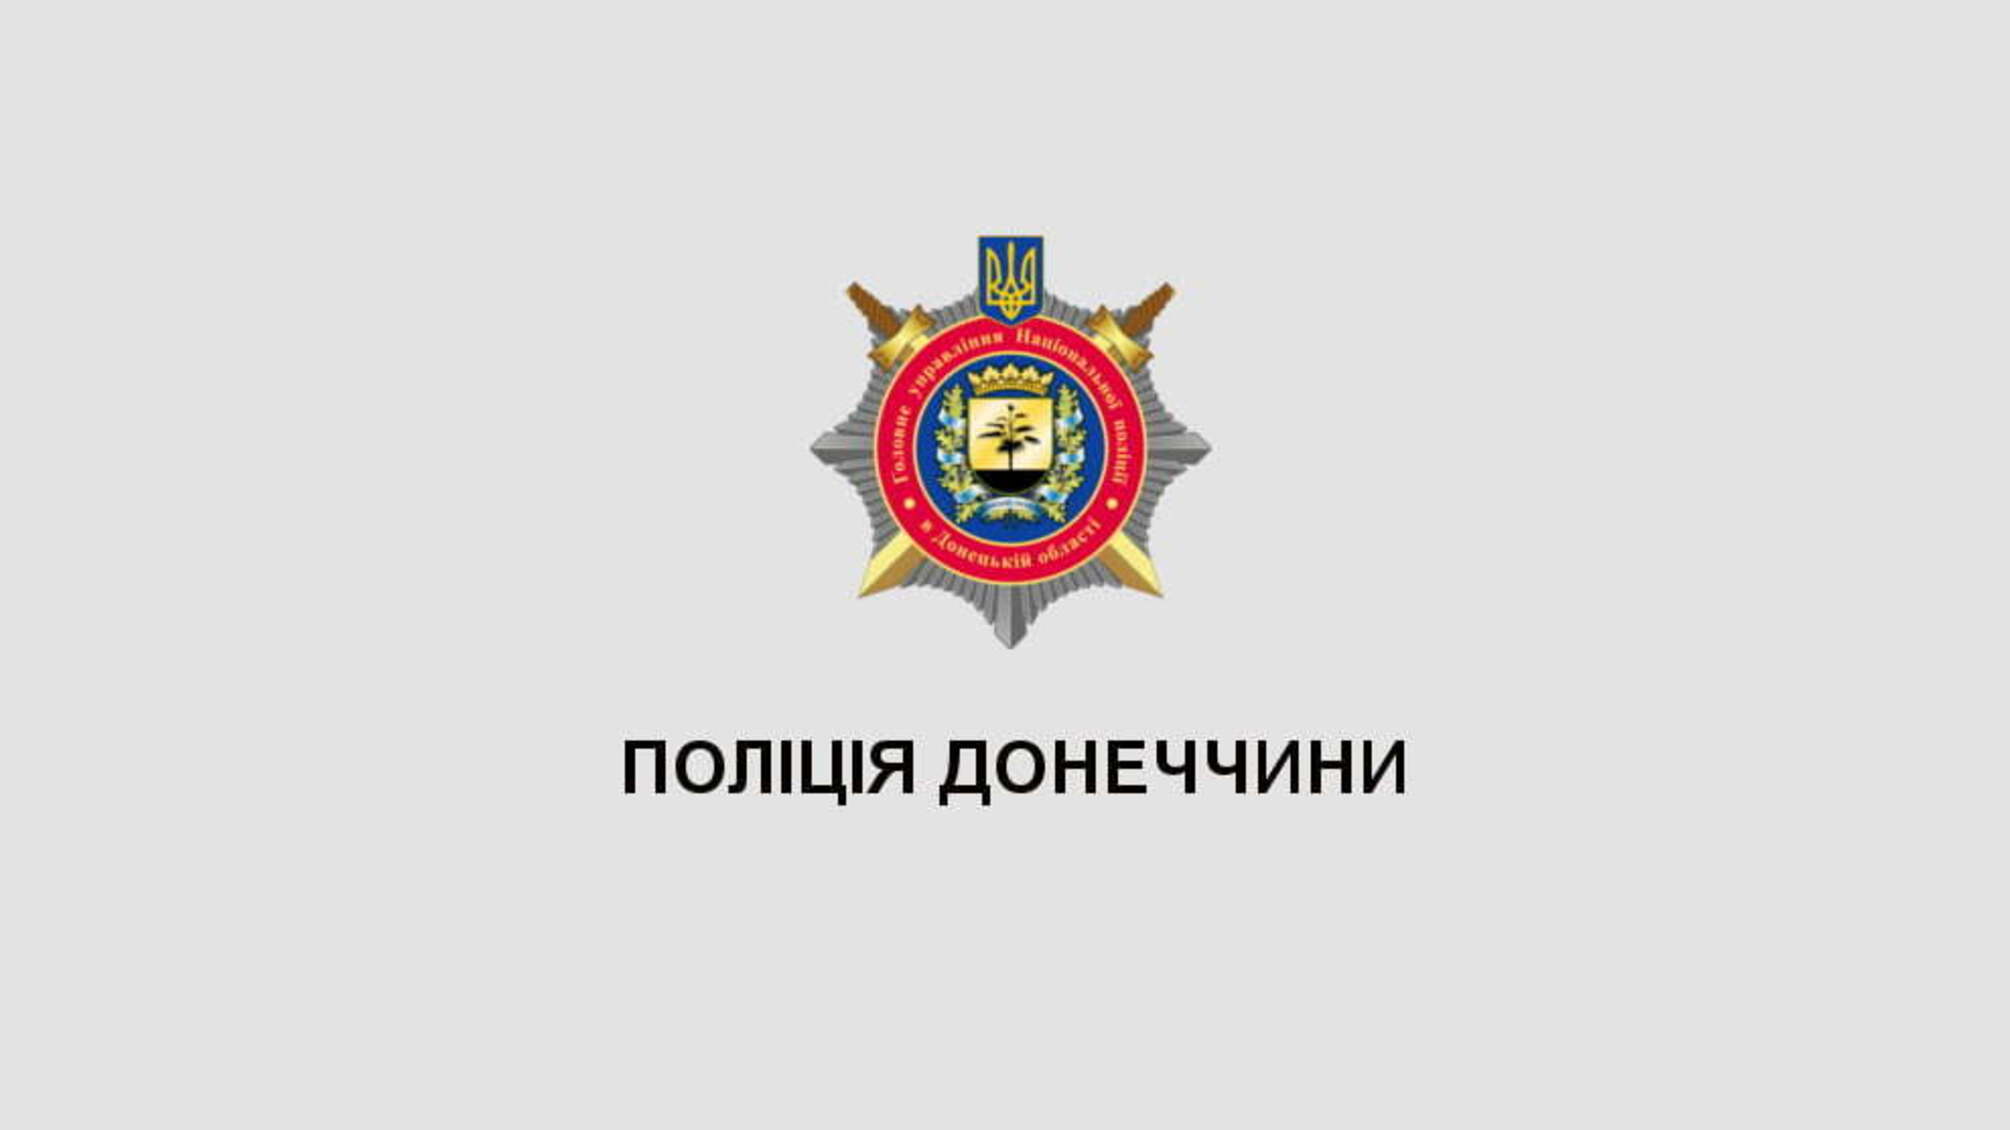 Команда поліції Донеччини перемогла у першому матчі ХХХ Чемпіонату України з волейболу